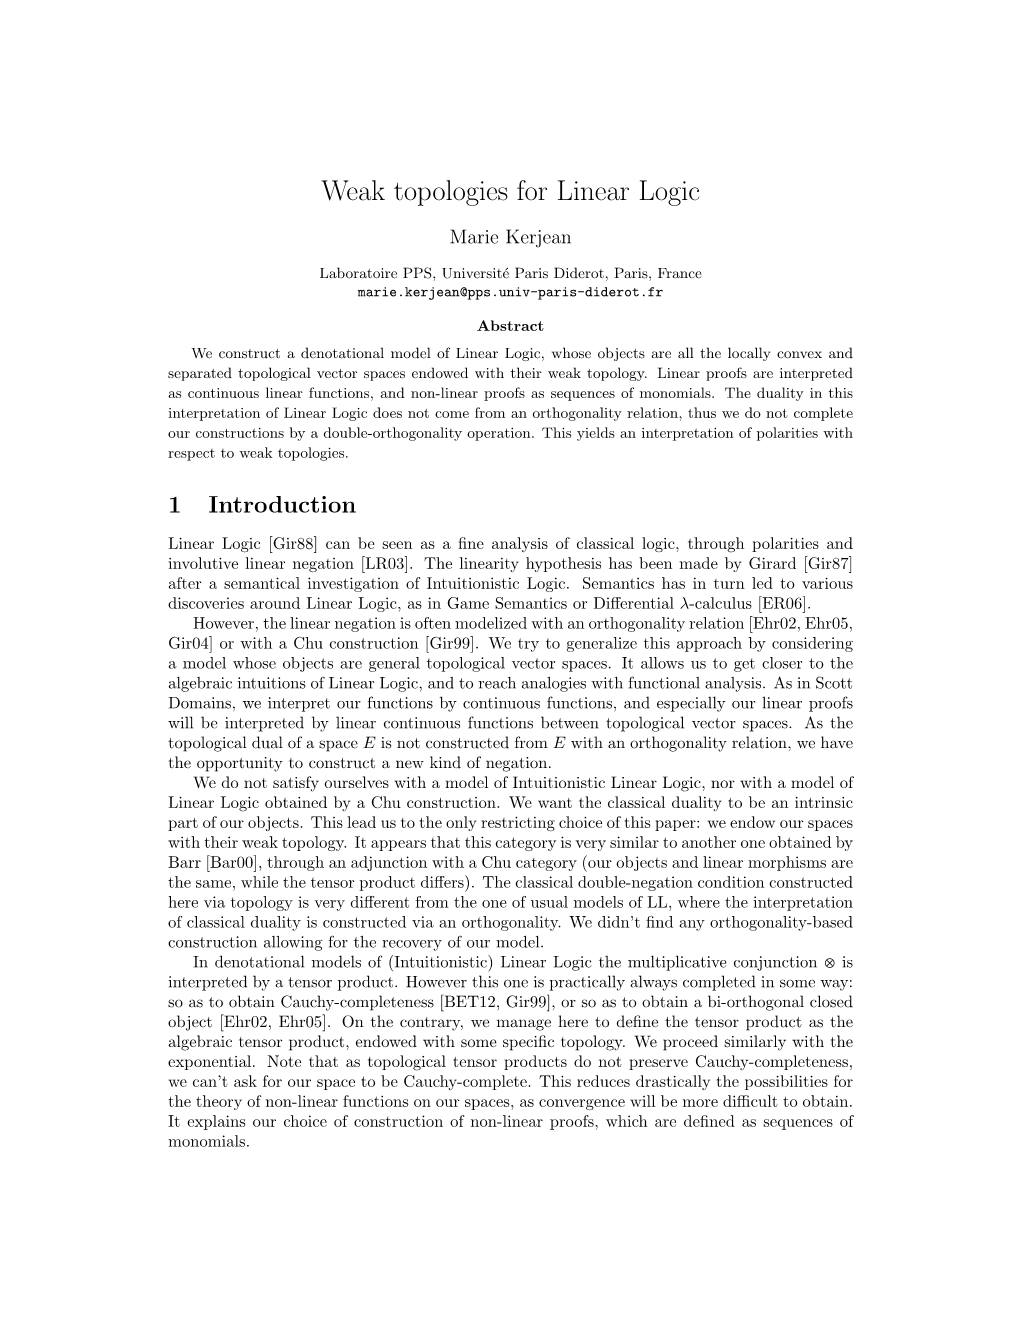 Weak Topologies for Linear Logic